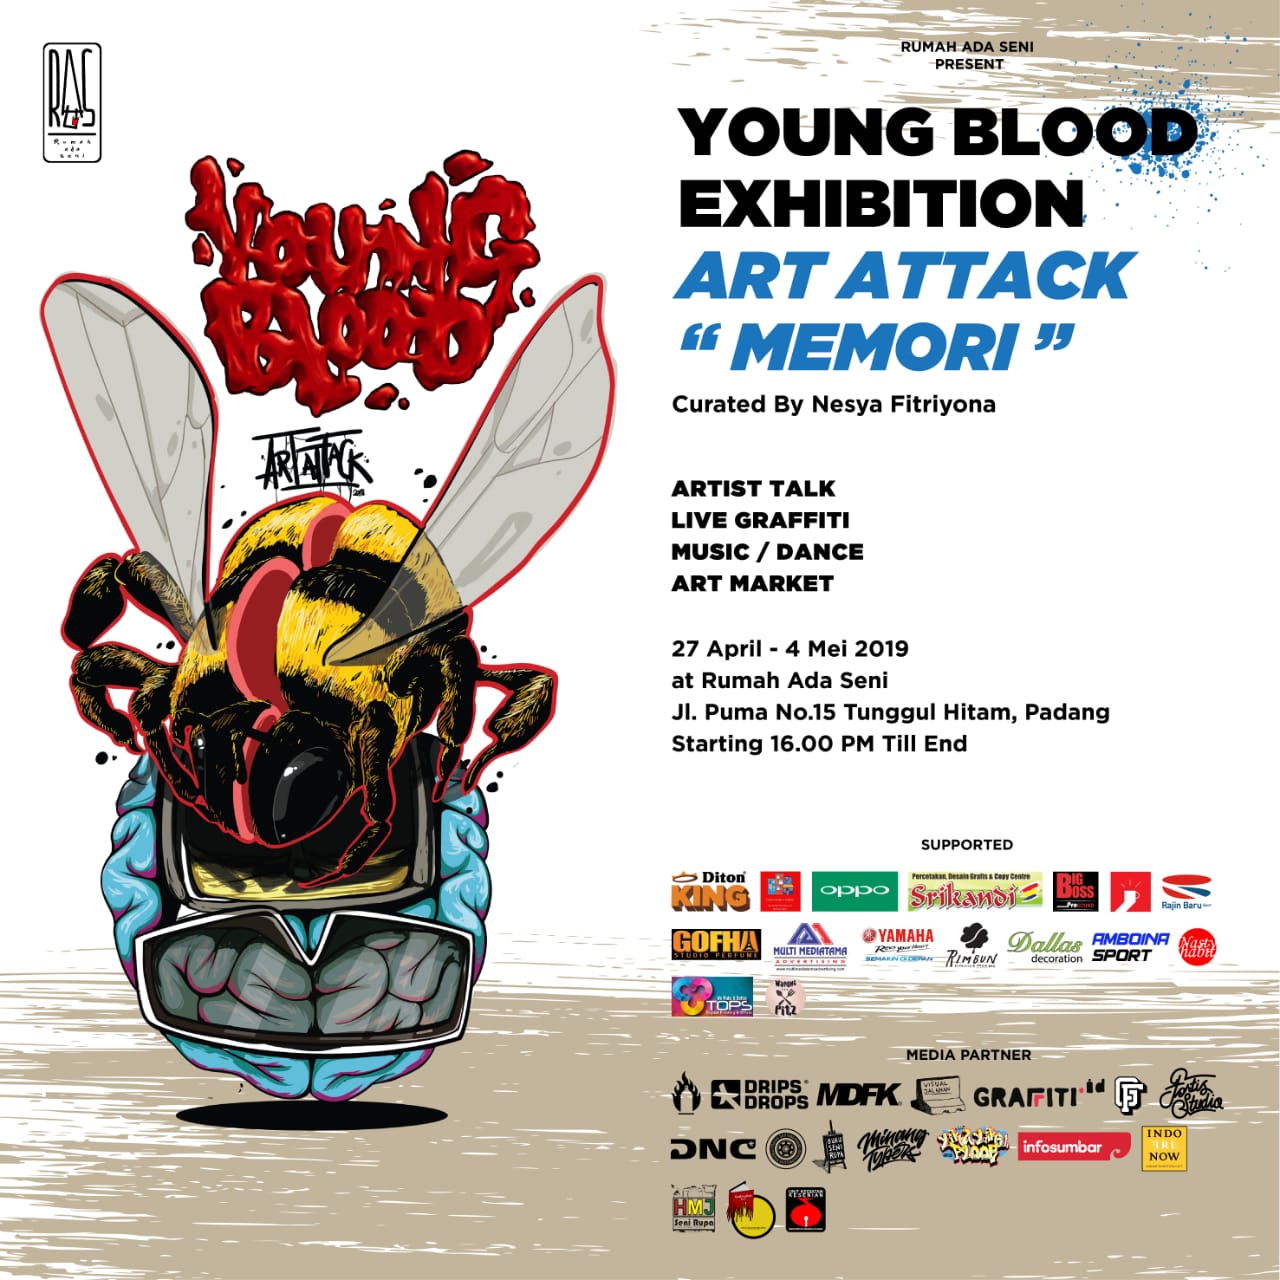 Pameran Rumah Ada Seni Young Blood Exhibition Art Attack Memori